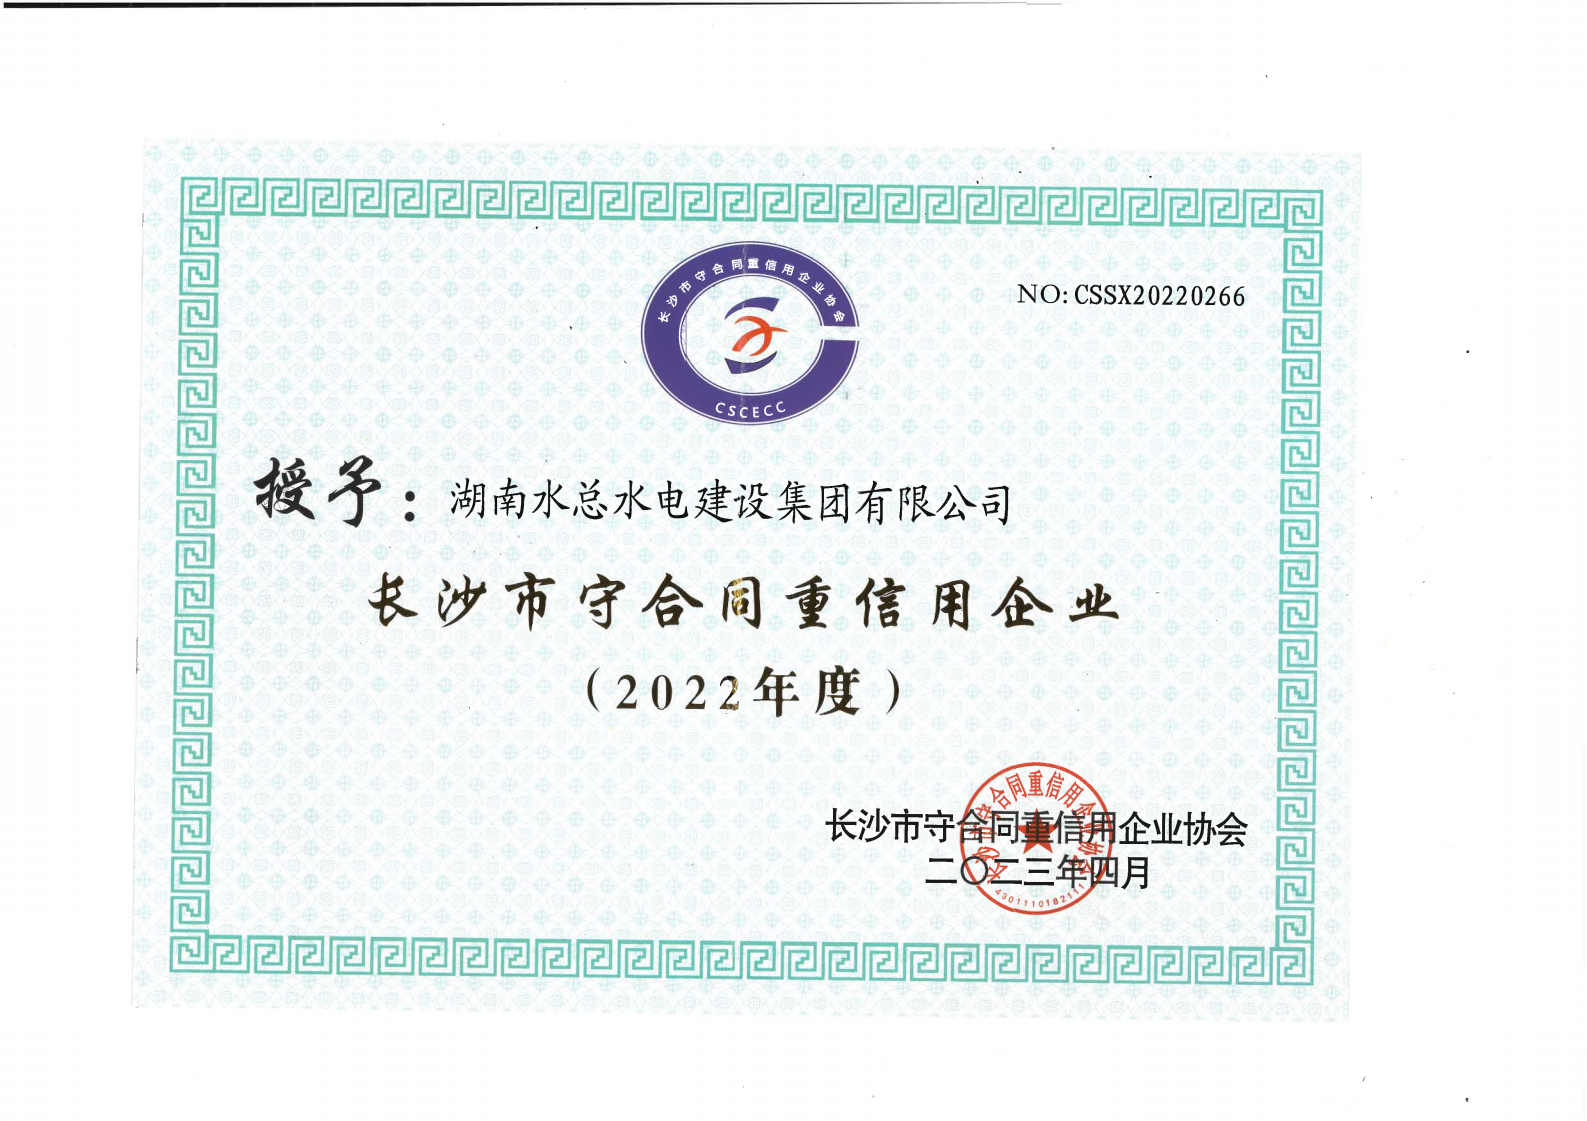 长沙市守合同重信用公示企业证书_00.png